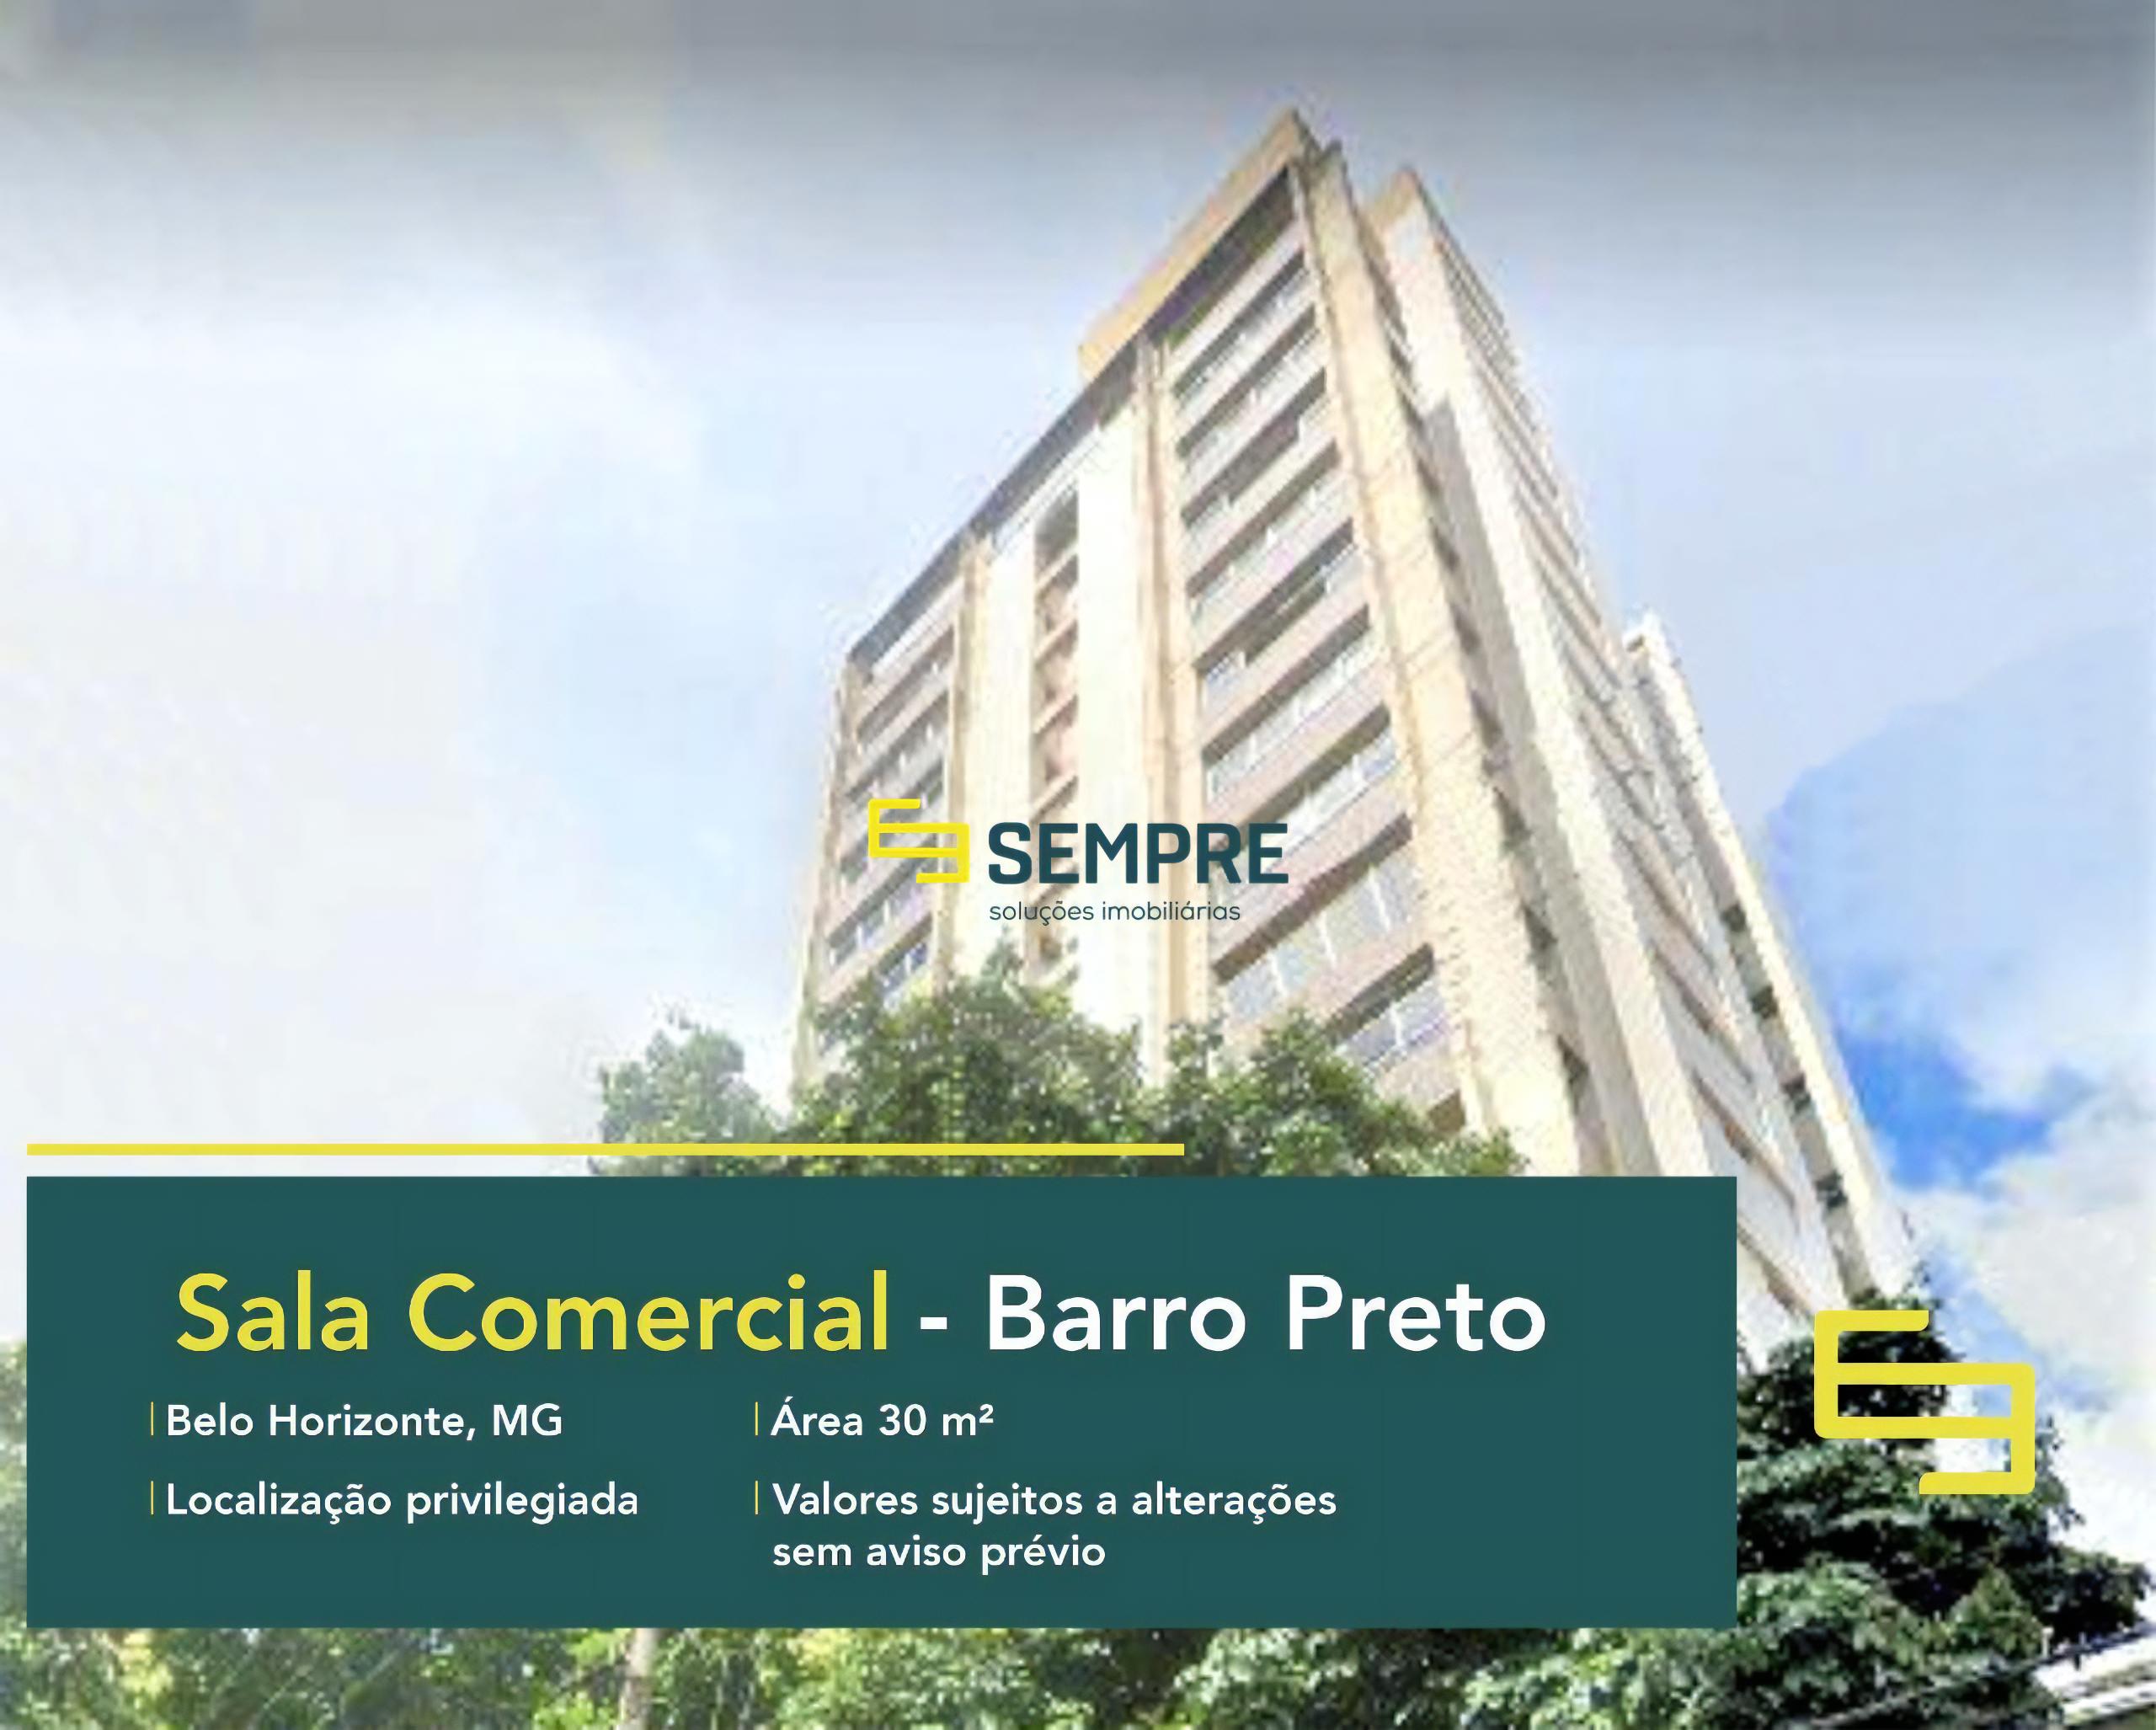 Sala comercial em BH à venda - Barro Preto, excelente localização. O estabelecimento comercial conta, sobretudo, com área de 30 m².